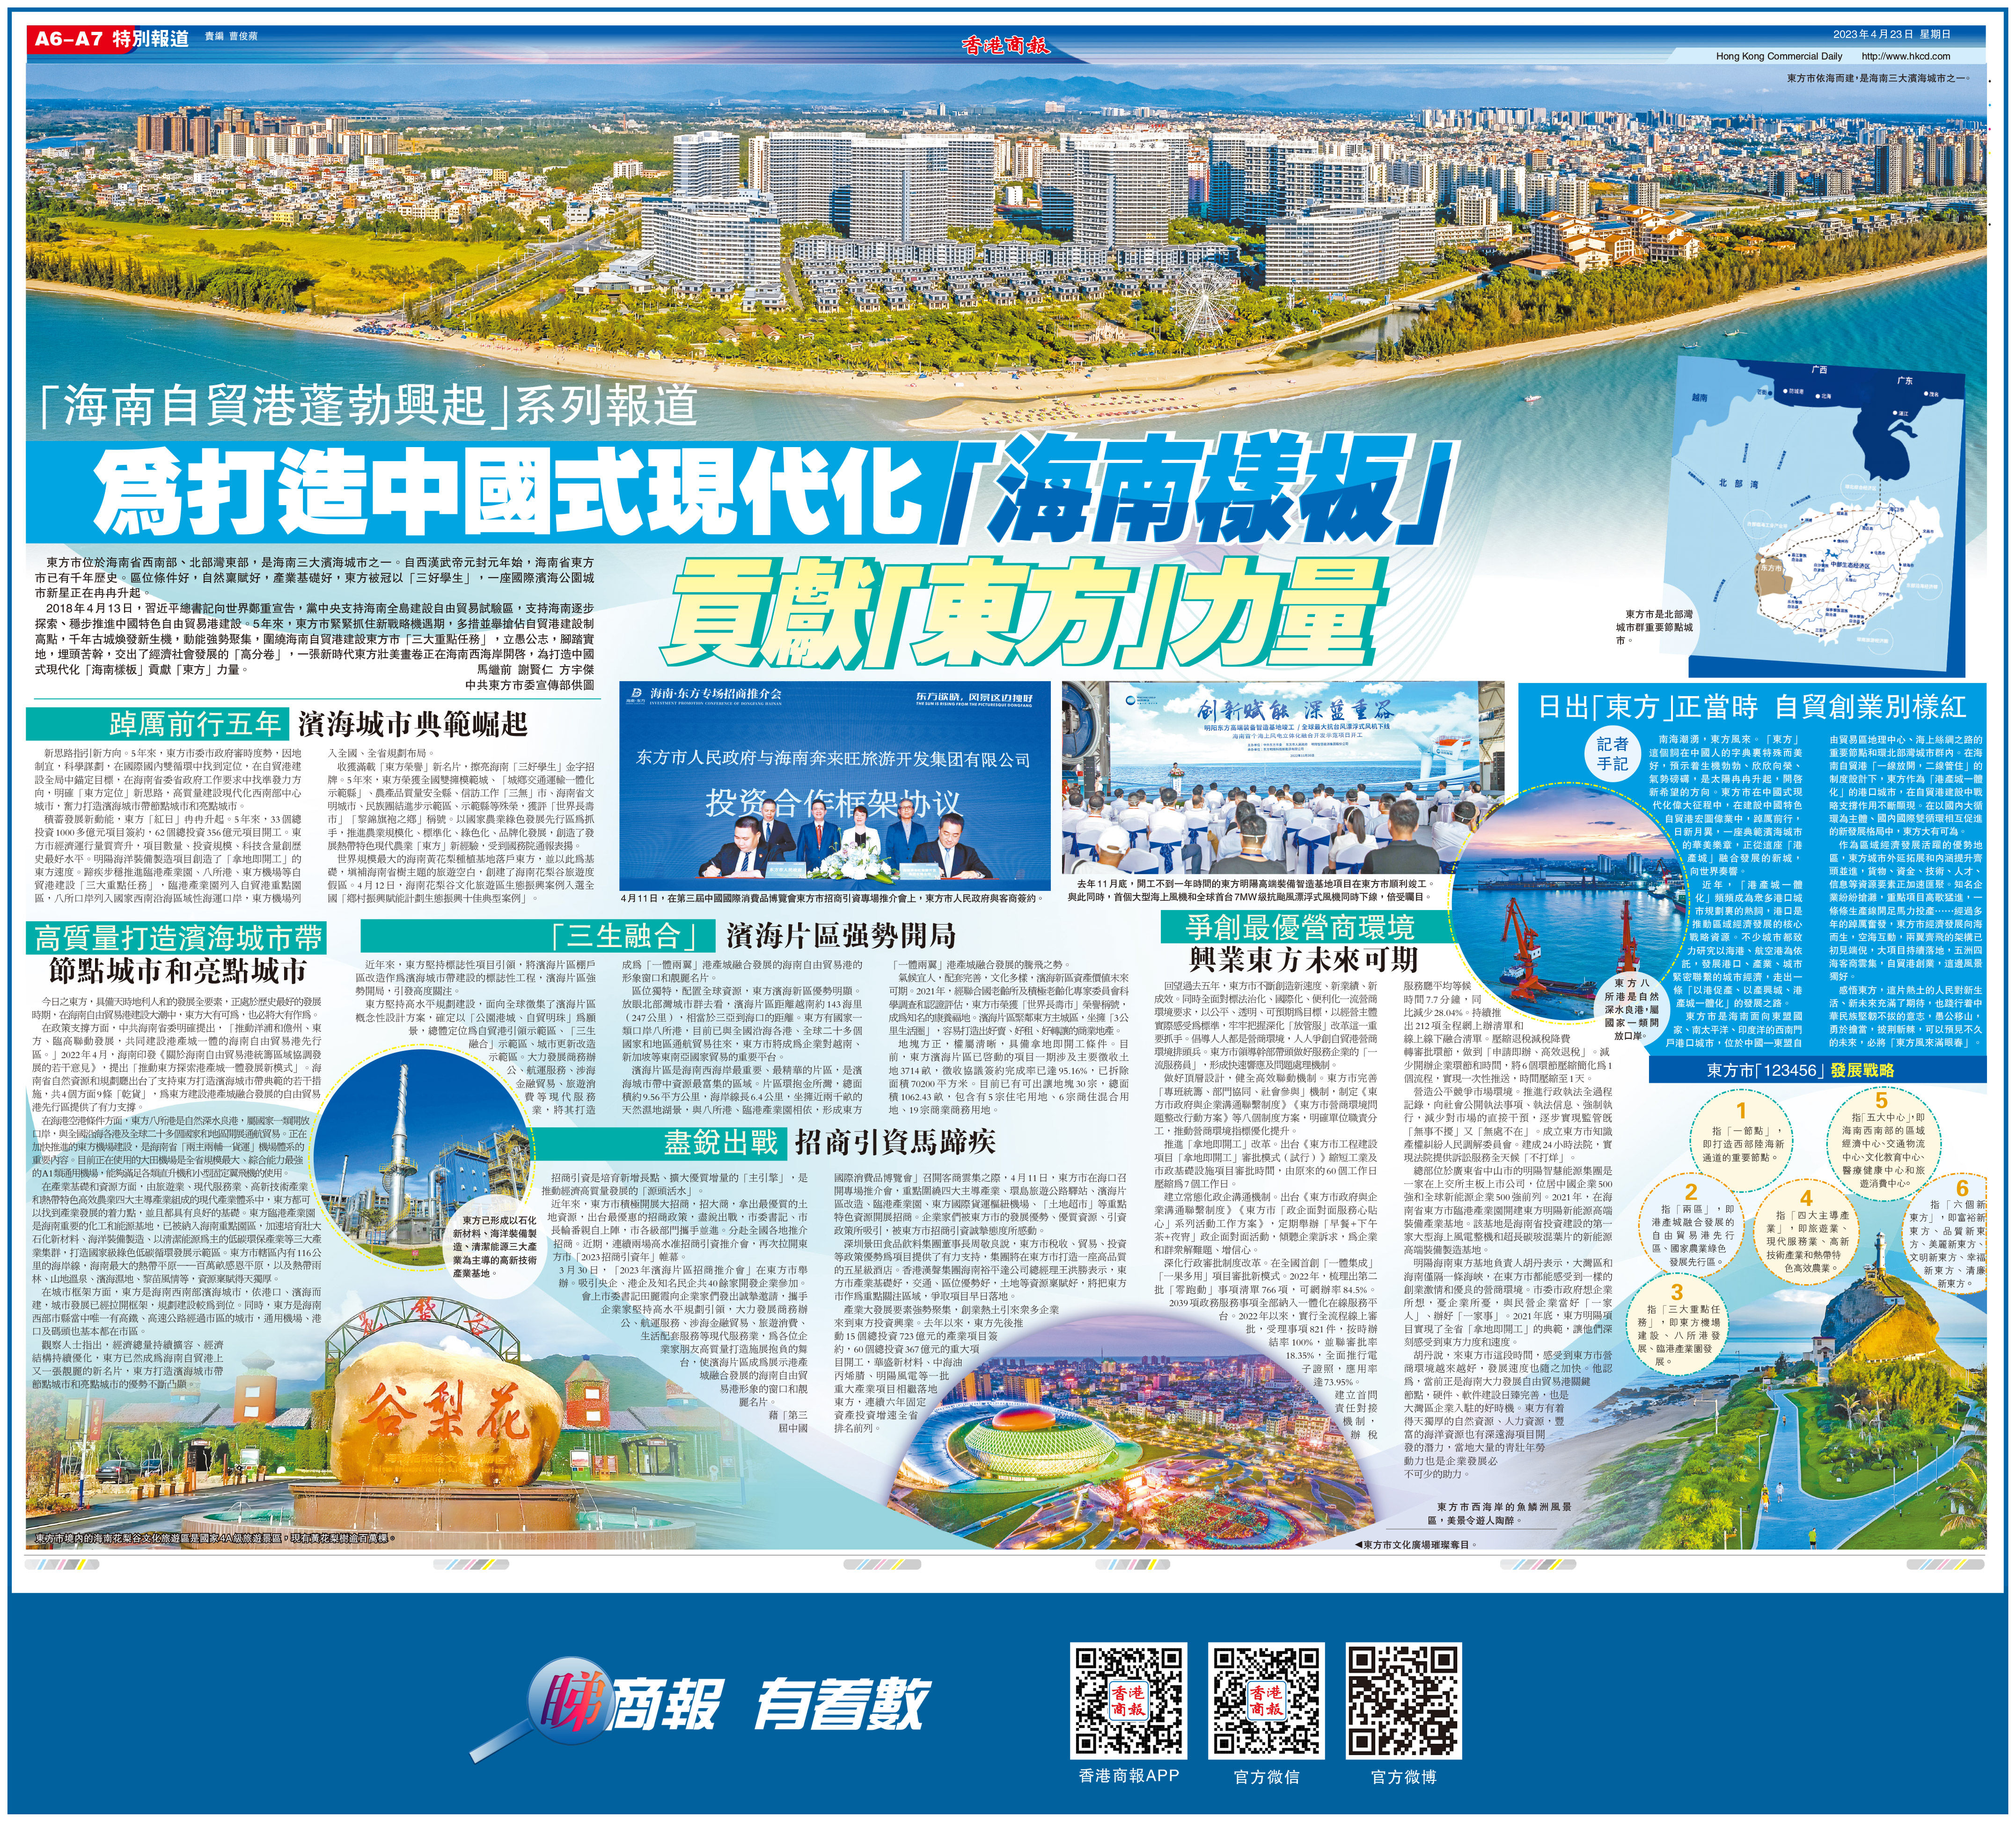 「海南自貿港蓬勃興起」系列報道 為打造中國式現代化「海南樣板」貢獻「東方」力量